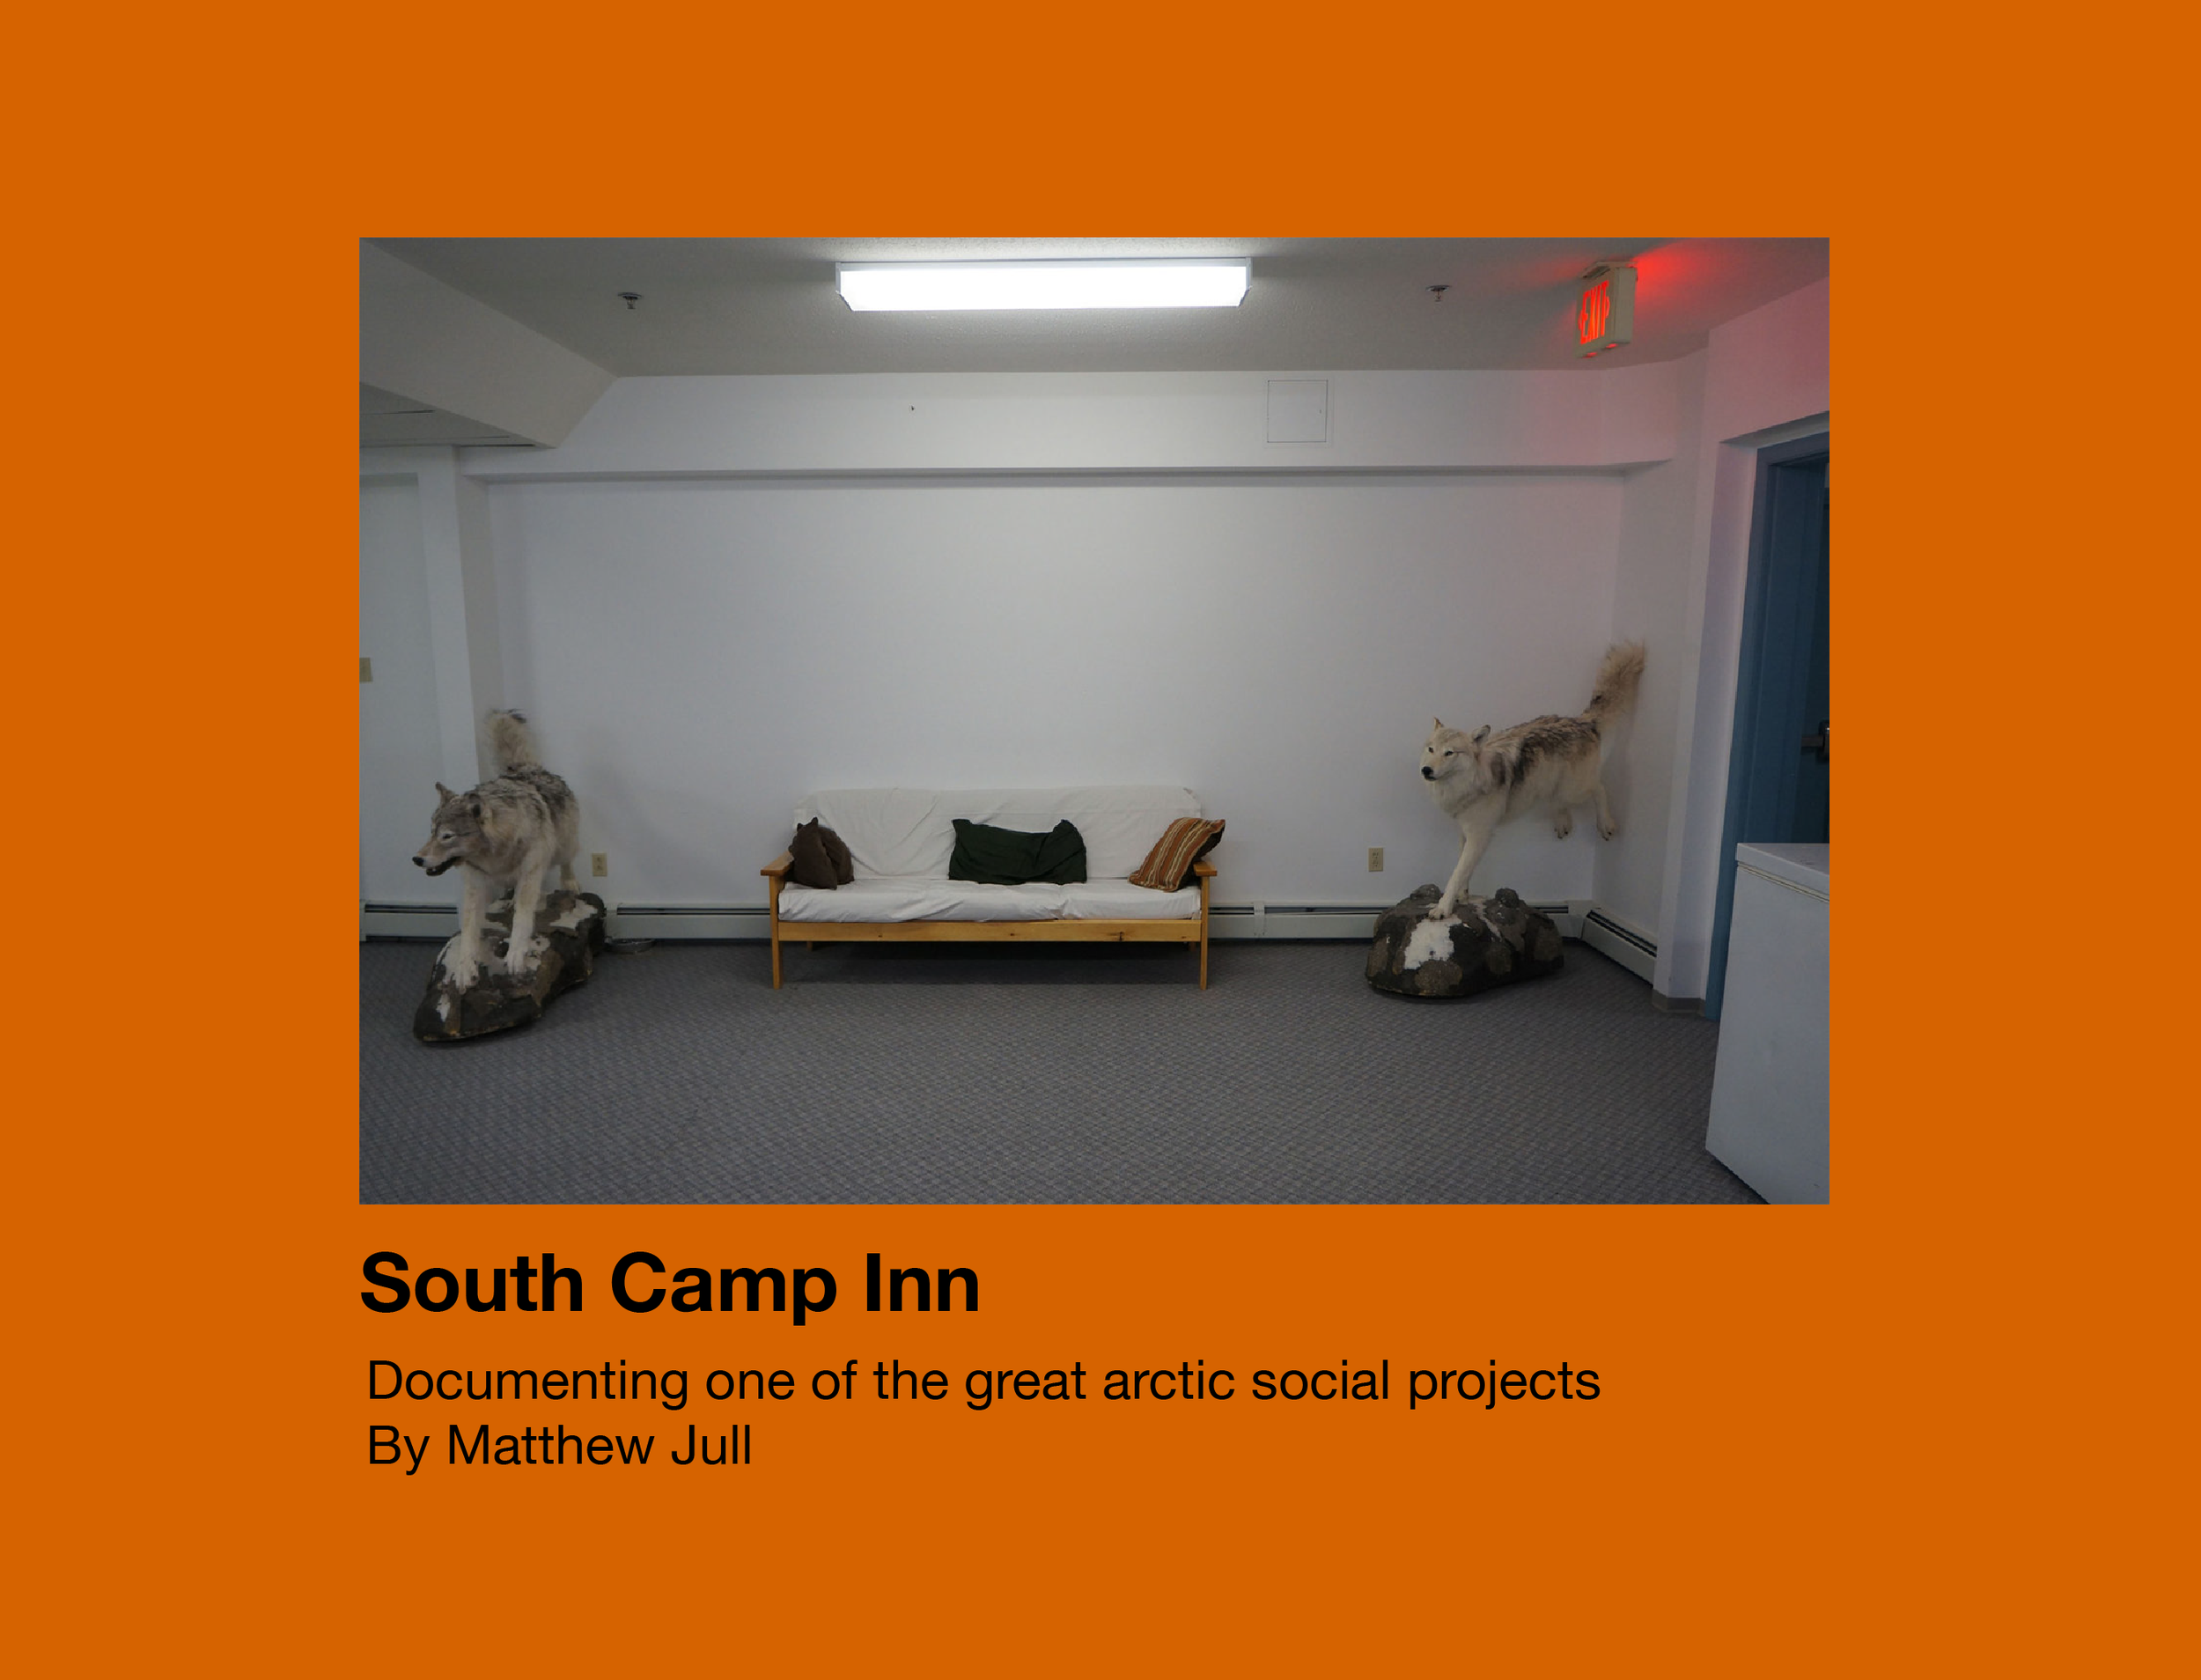 South Camp Inn